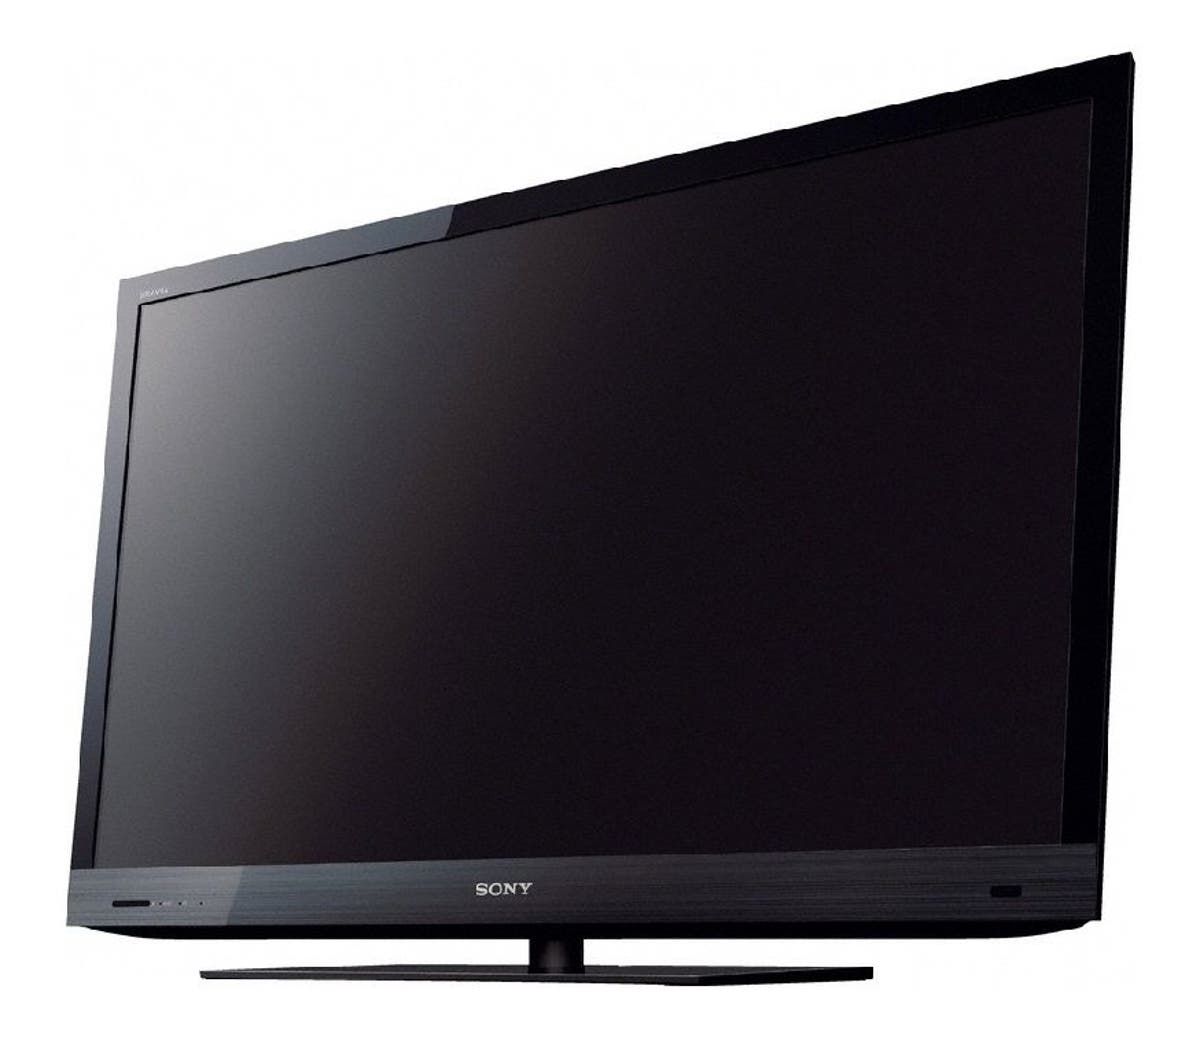 Samsung presenta un televisor de 40 pulgadas y 1 centímetro de grosor